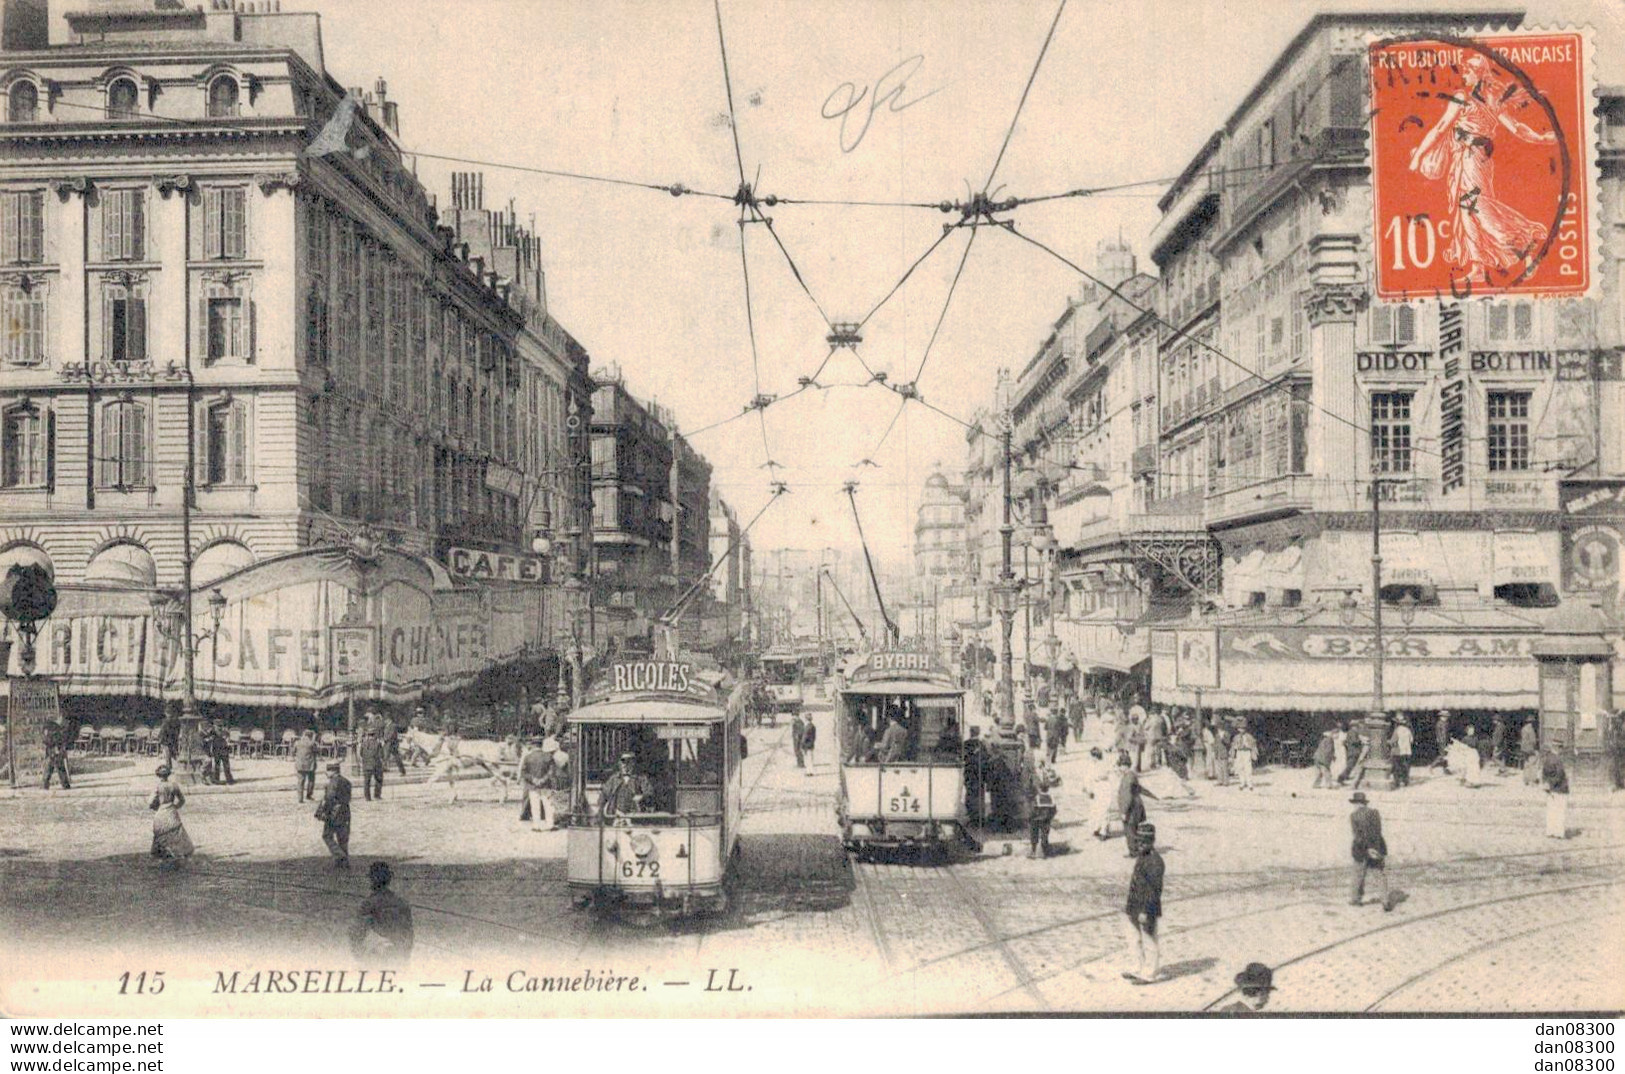 13 MARSEILLE LA CANNEBIERE - The Canebière, City Centre